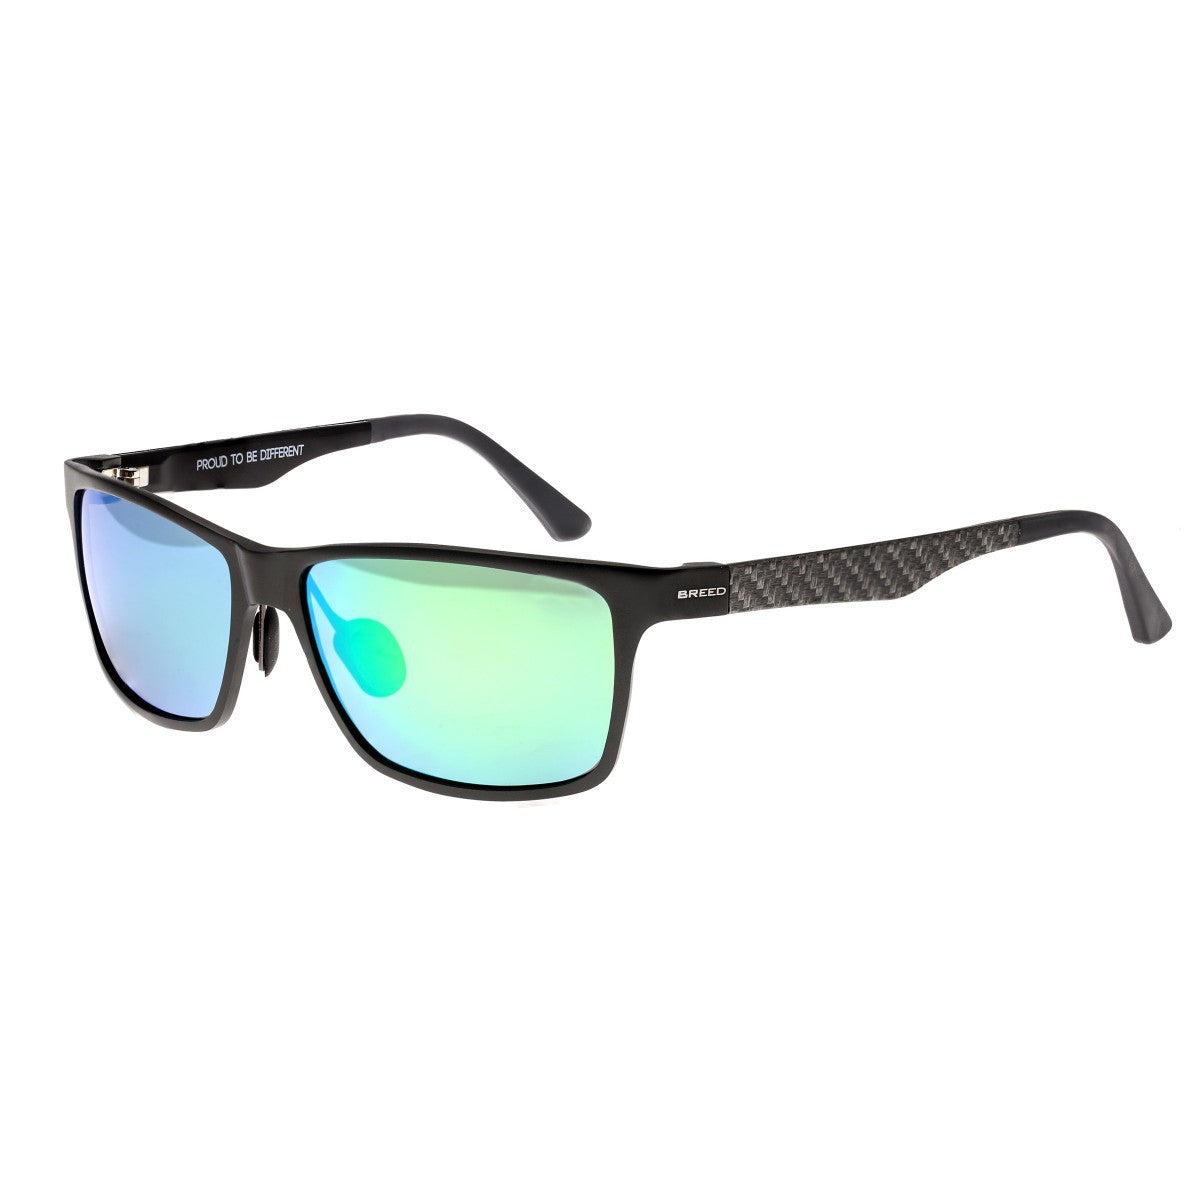 Breed Vulpecula Titanium Polarized Sunglasses - Gunmetal/Blue-Green - BSG029GM